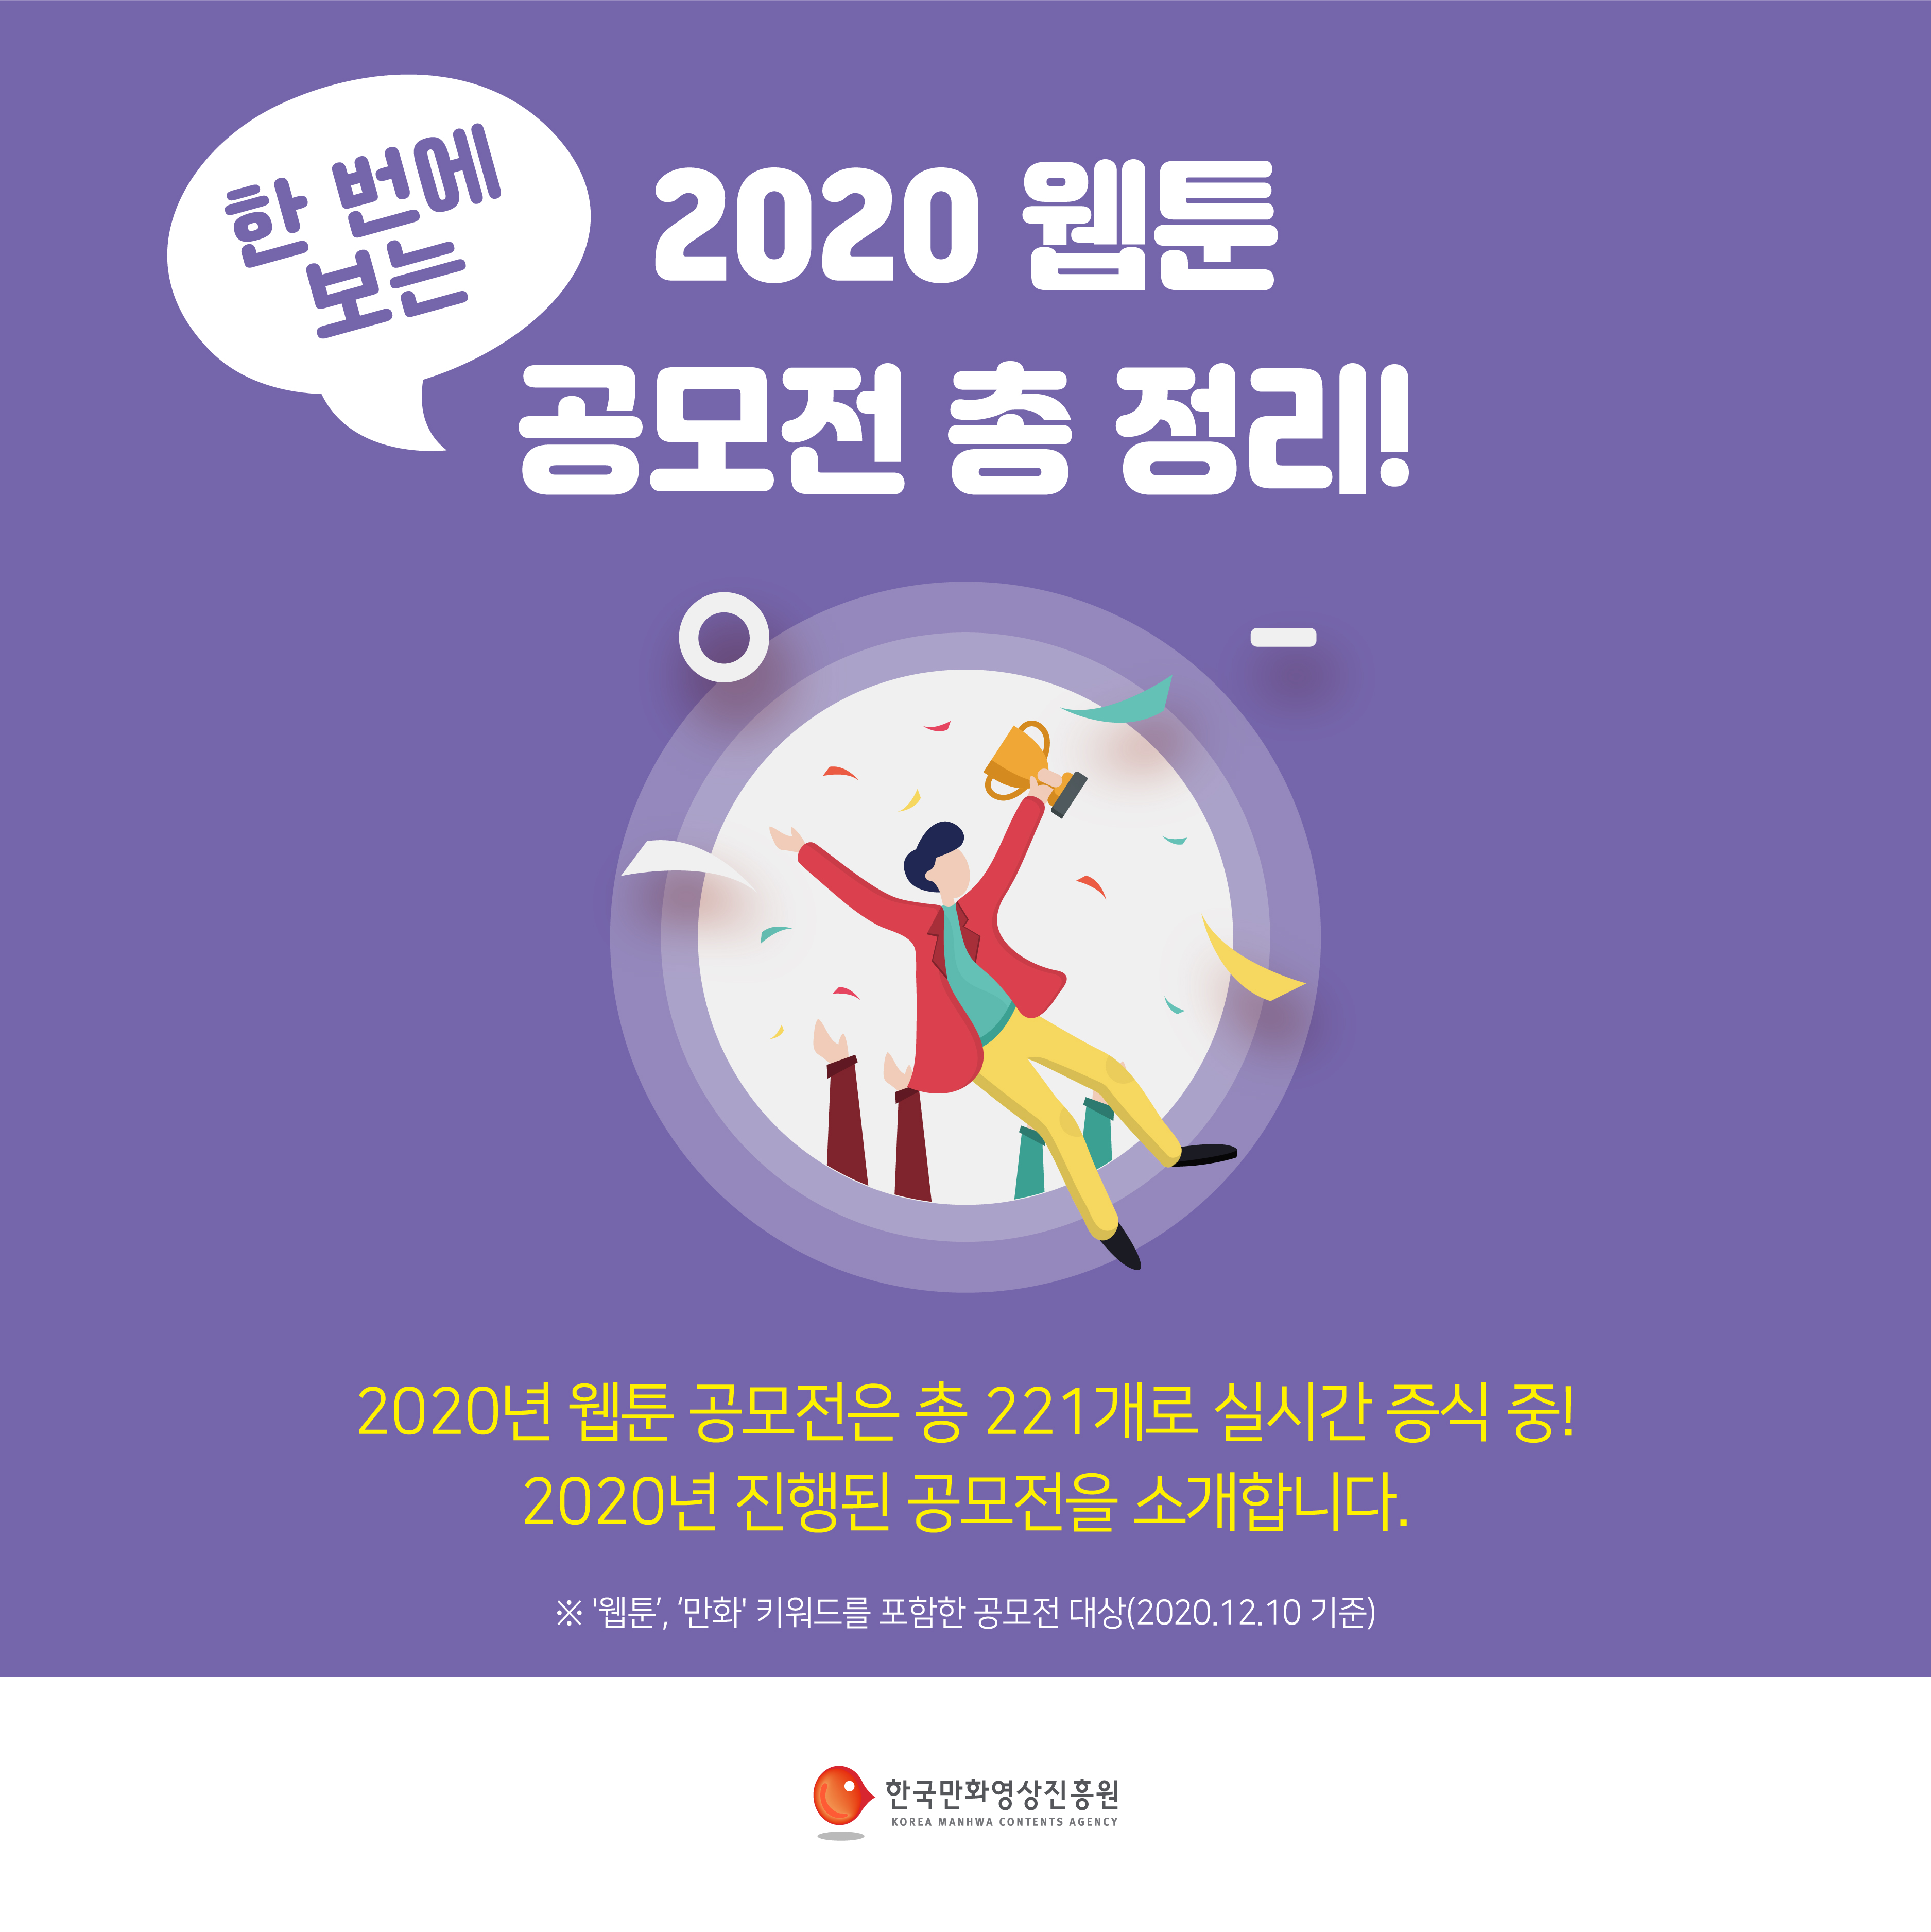 2020 웹툰 공모전 총 정리 카드뉴스